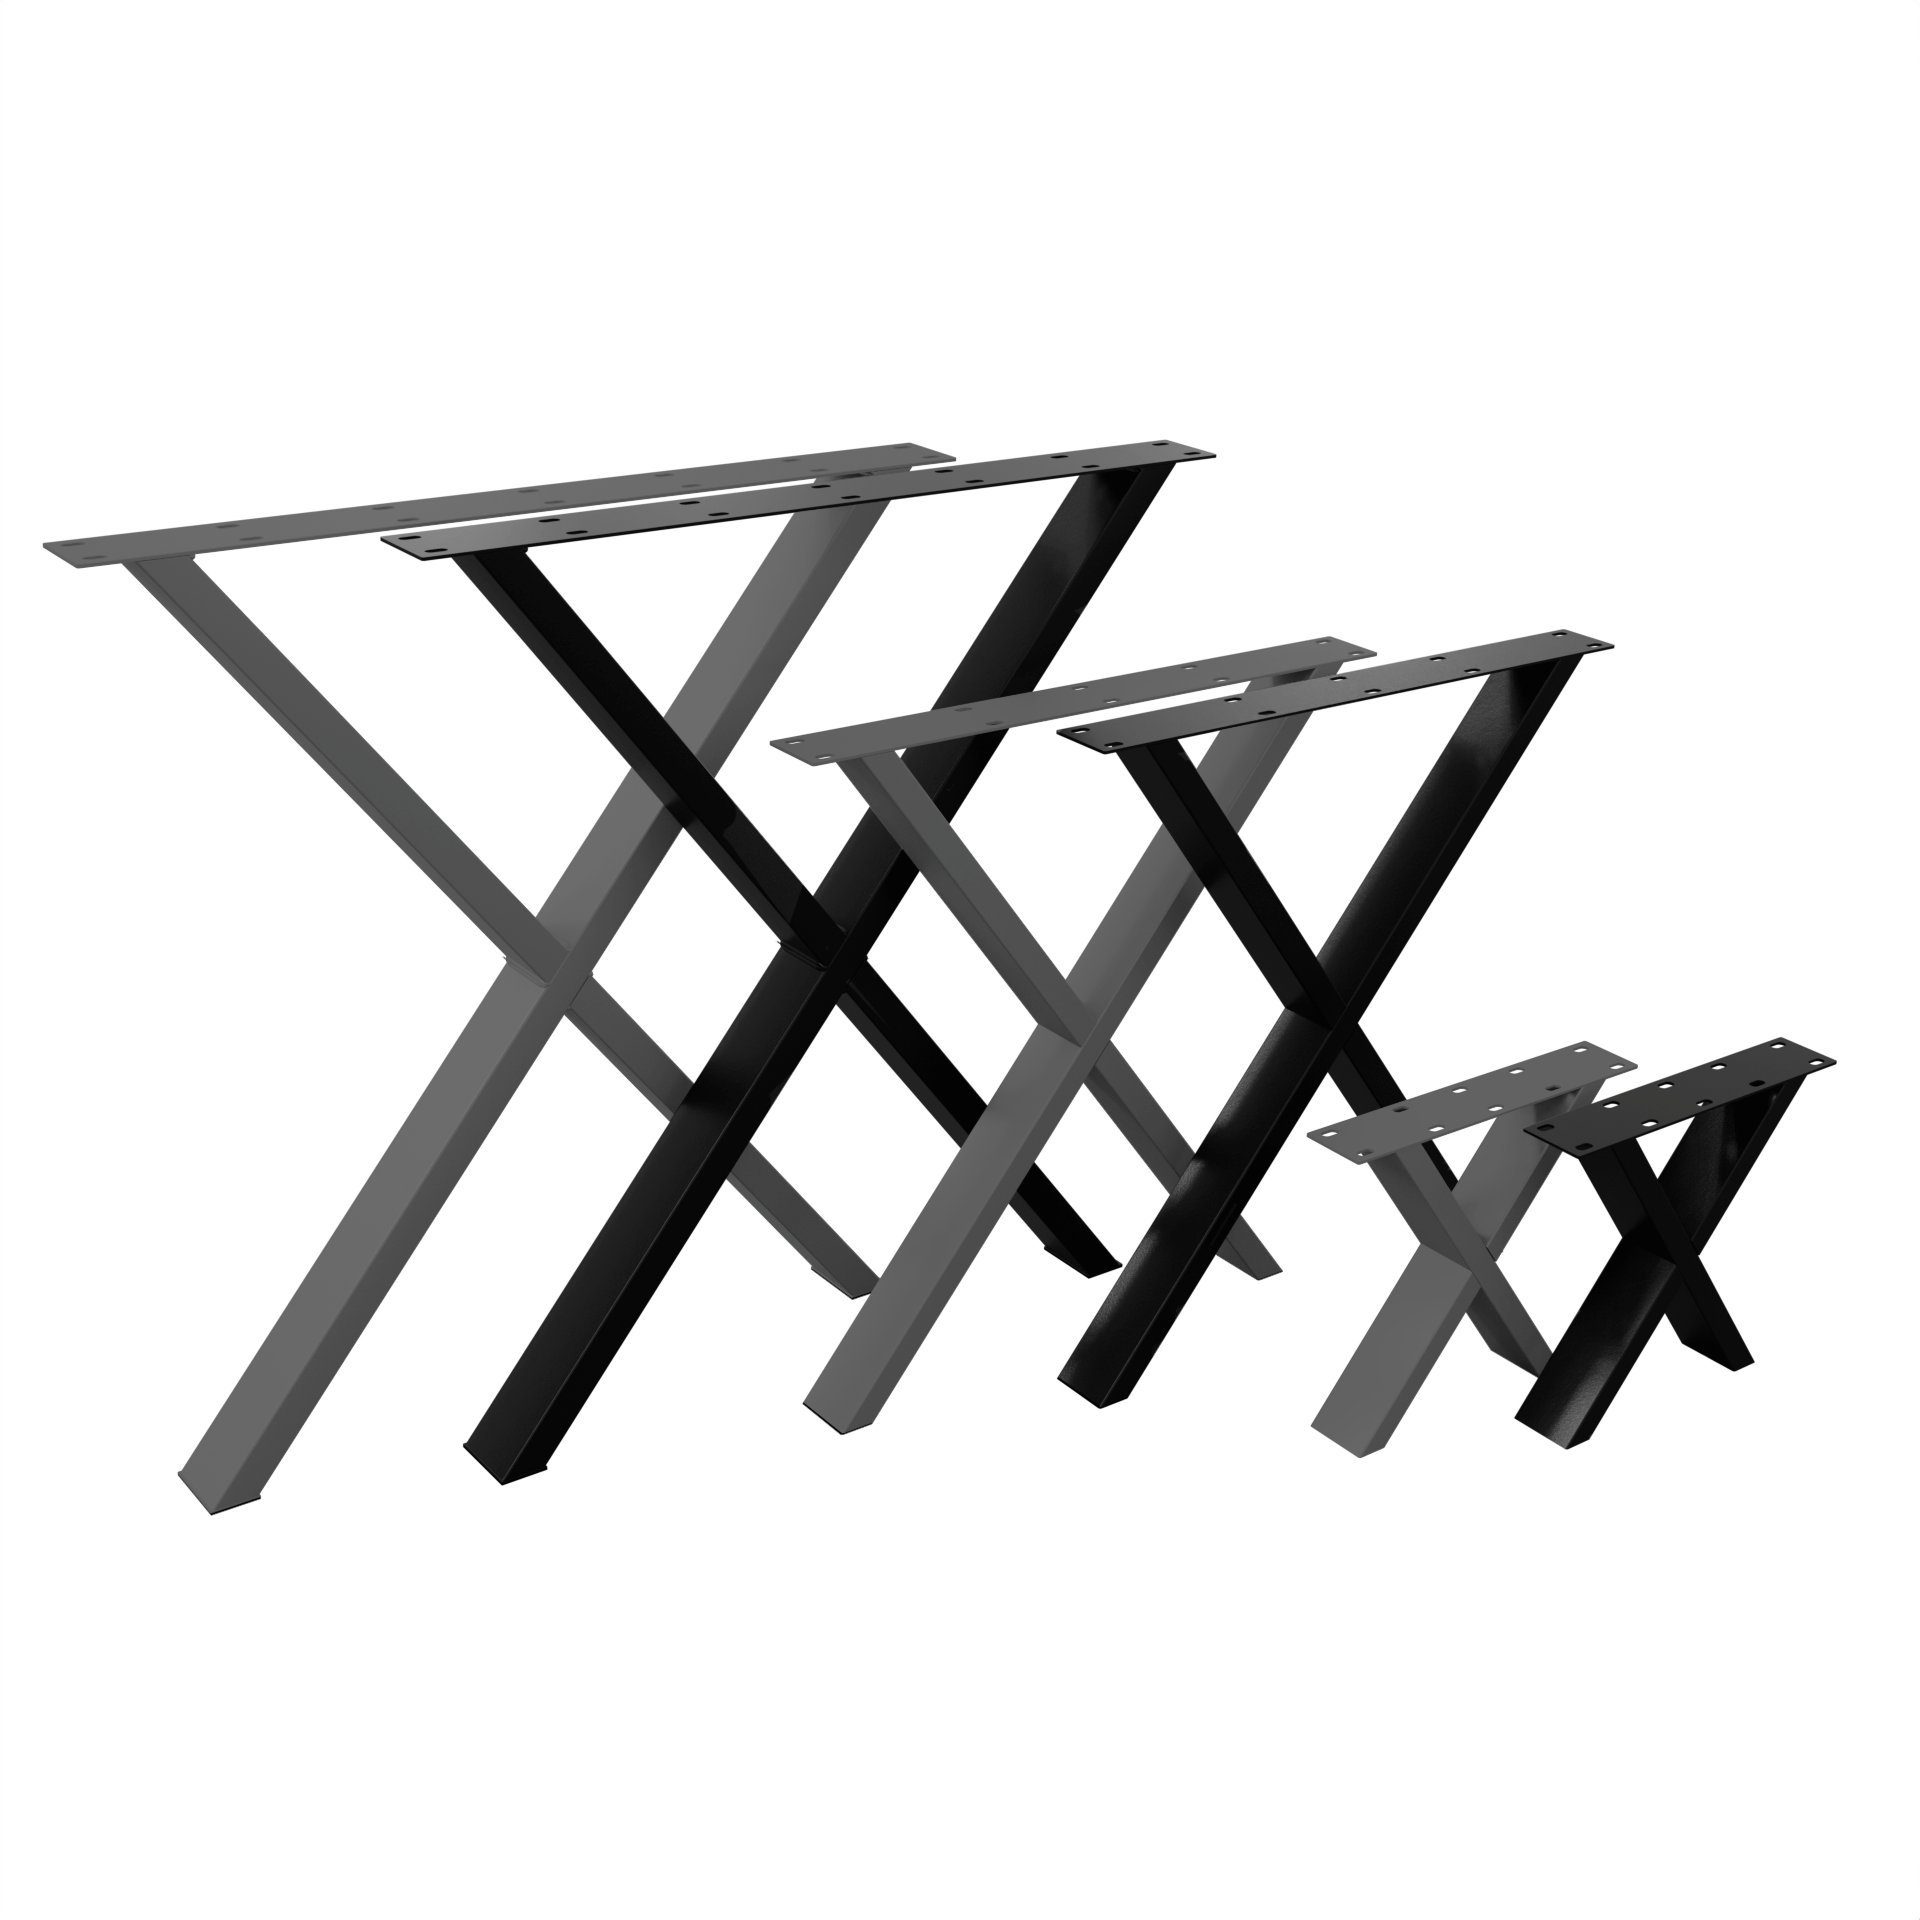 NOGGI - Home Decor Masters Tischbein 2 Tischkufen X- Form, 30x40cm - anthrazit - Sitzbank I Möbelkufen für Dein DIY-Home Projekt